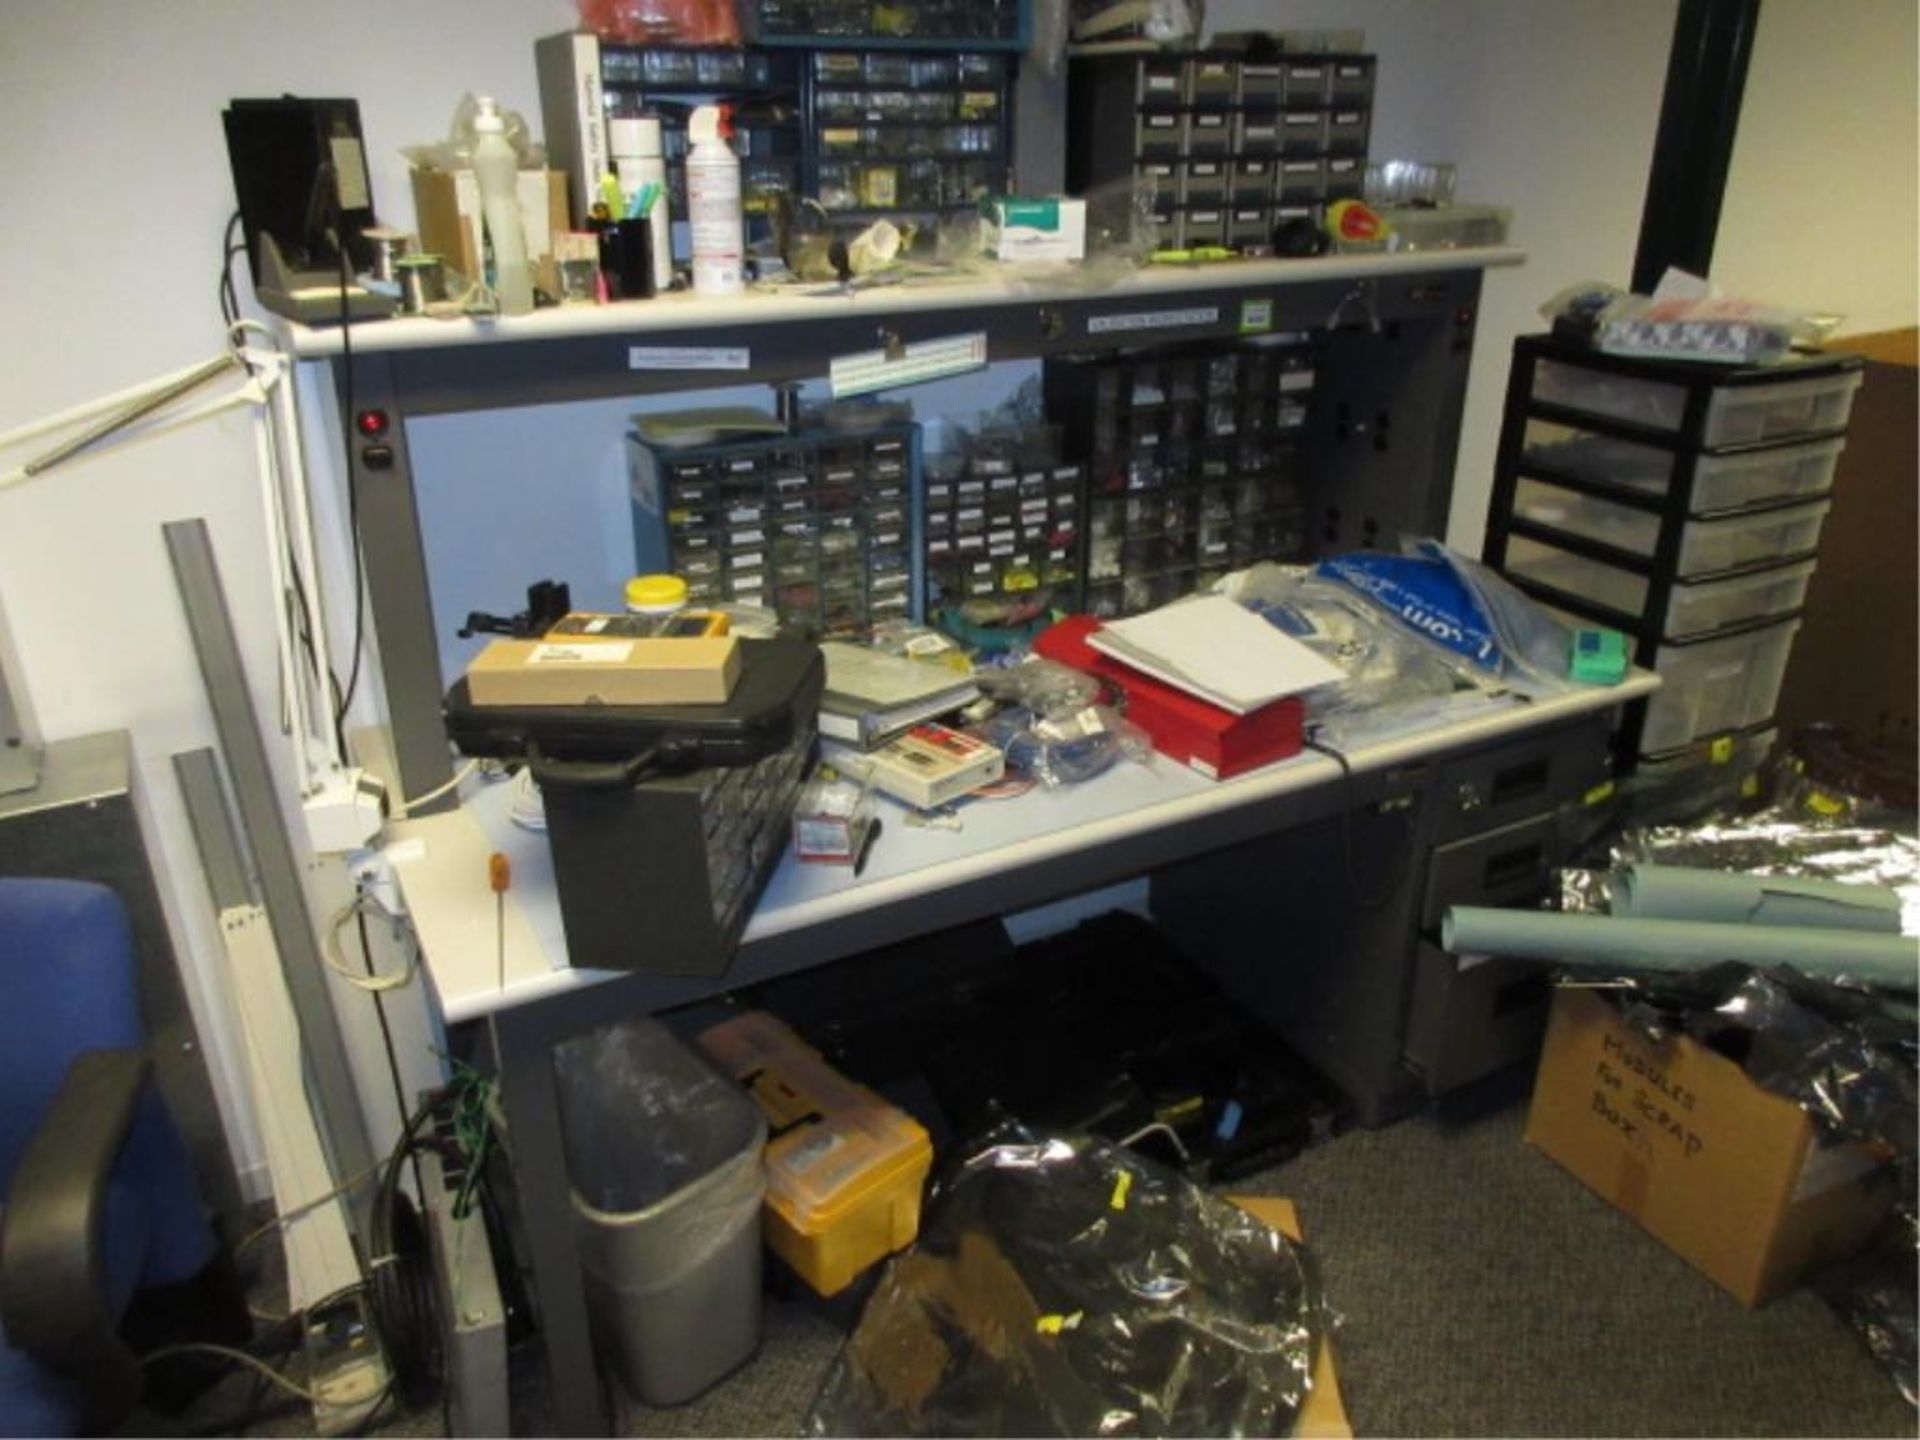 IAC Industries ESD Workbench. Electronics Lab Workbench, 72"w x 30"d x 55"h, with drawers & power